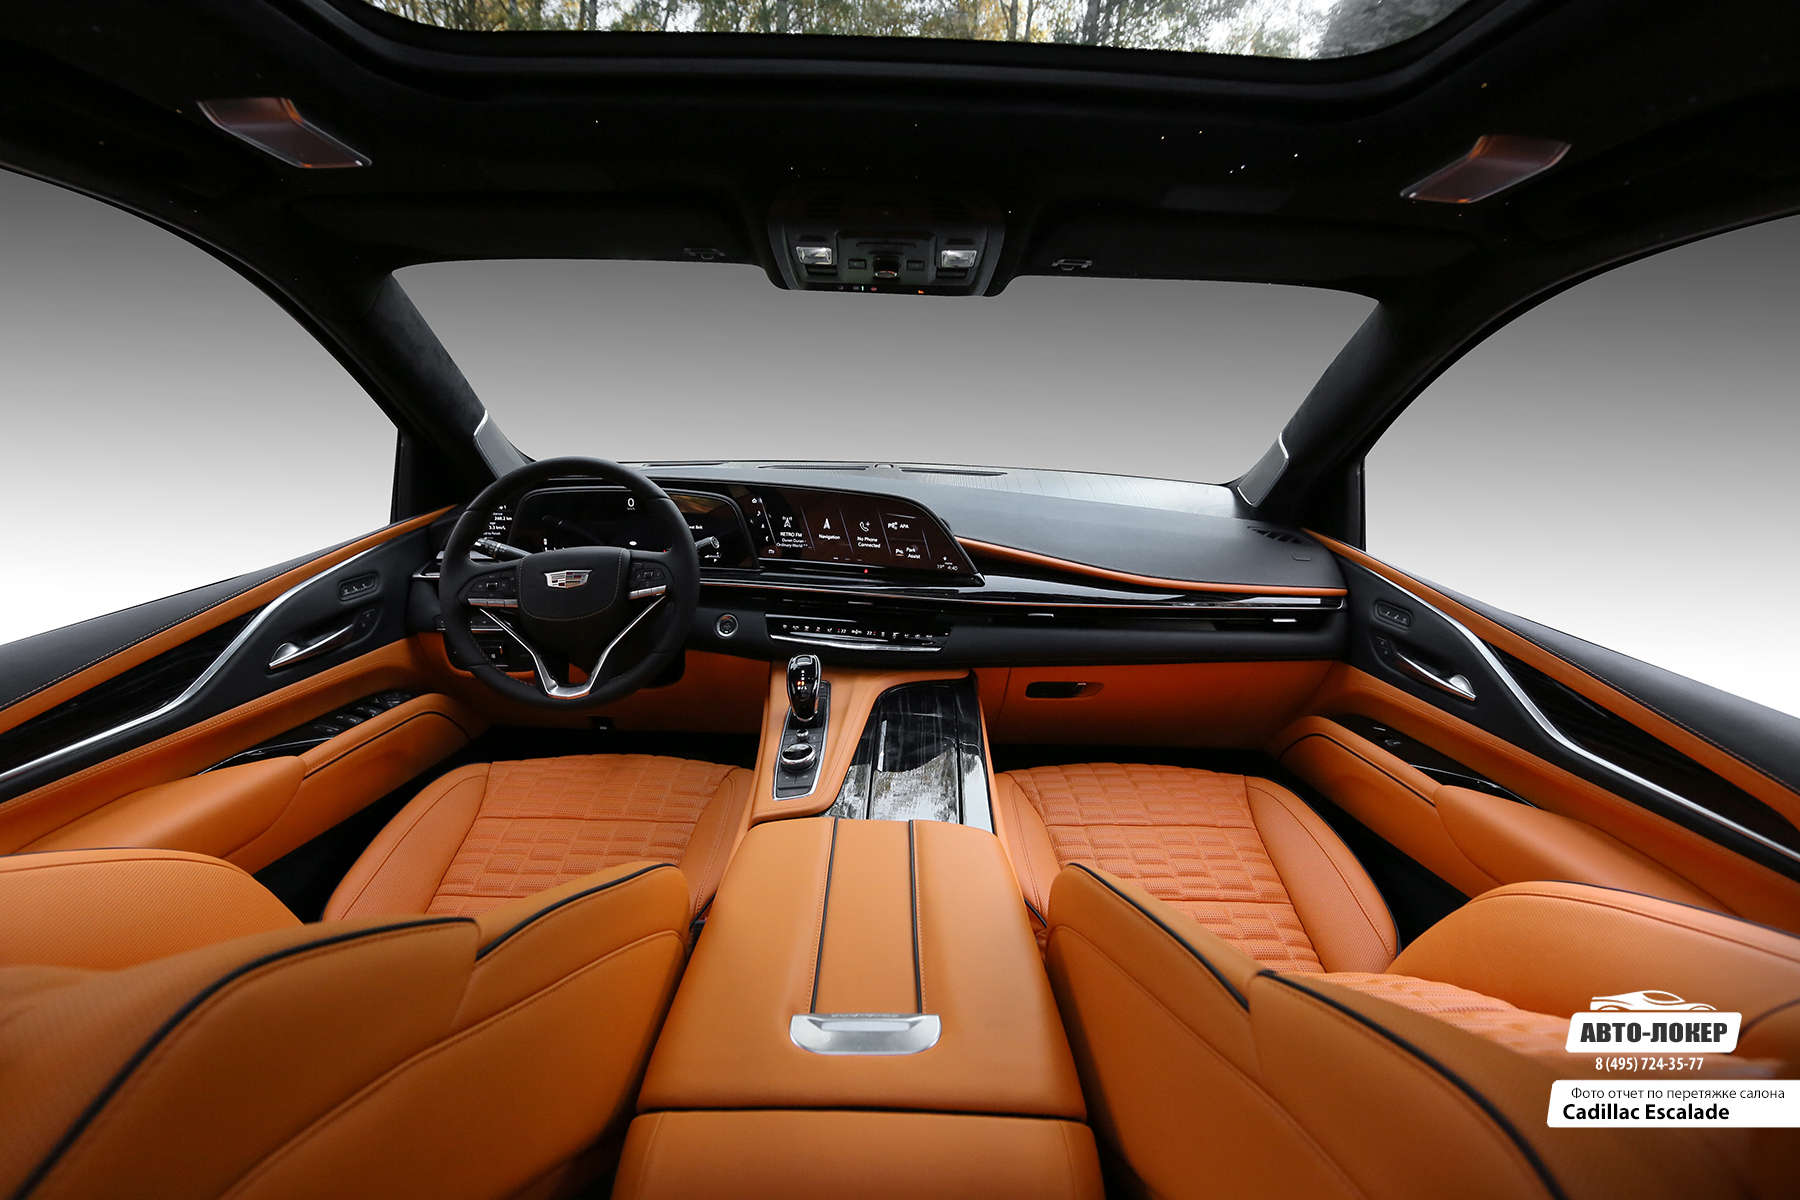 Перетяжка сидений, центральной консоли, торпедо и дверей оранжевой кожей салона Cadillac Escalade Mandarin